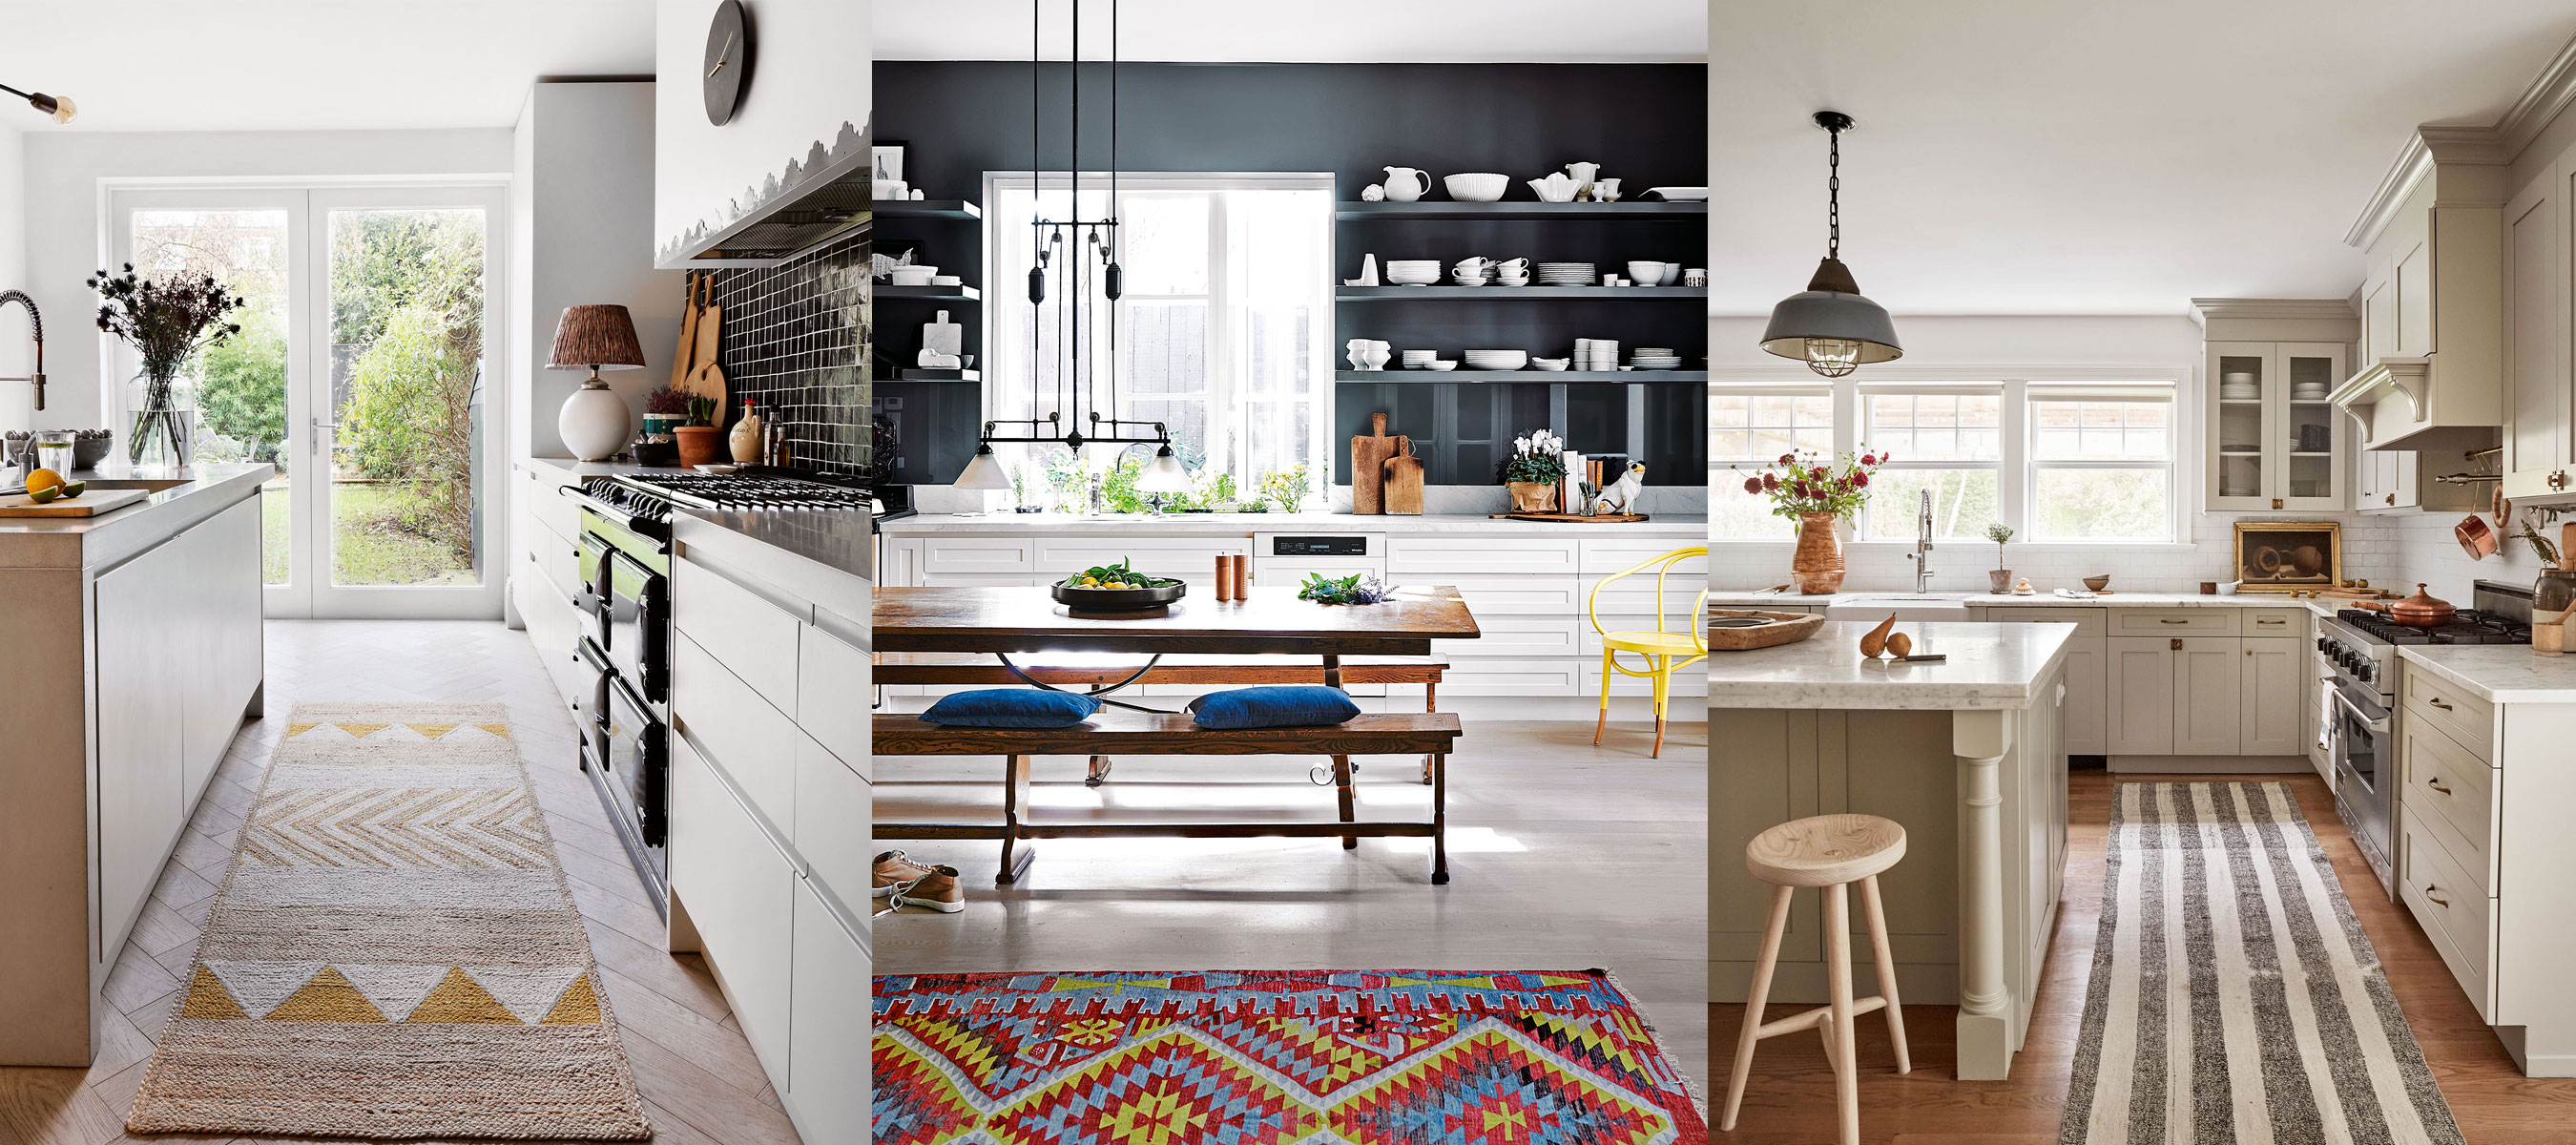 Kitchen rug ideas: 10 best rug designs for kitchens |